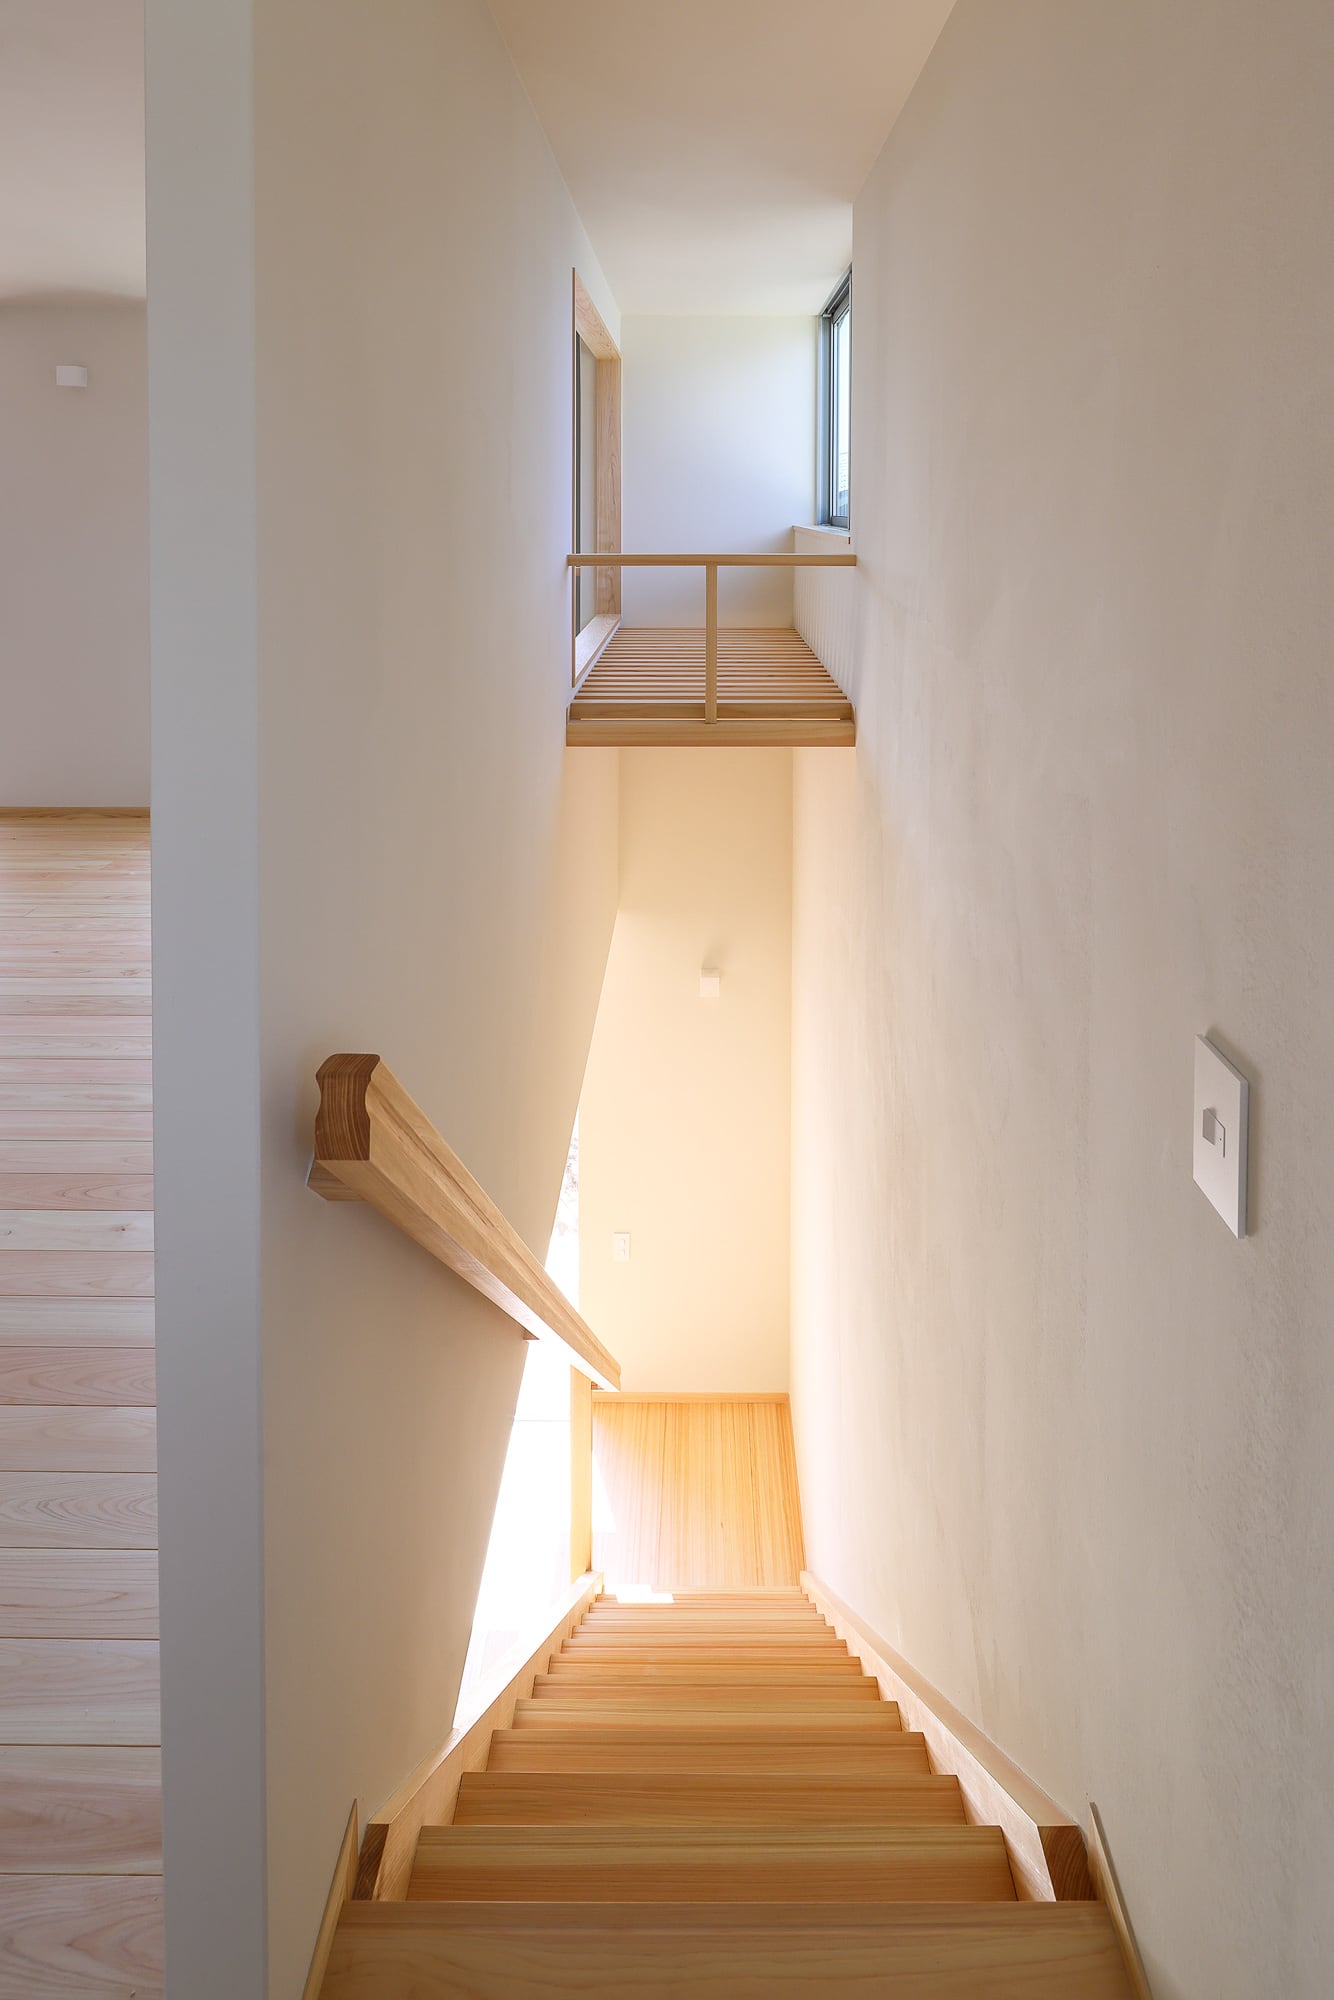 木の家 新築注文住宅「太陽がはぐくむ家」(宝塚市) 17 階段